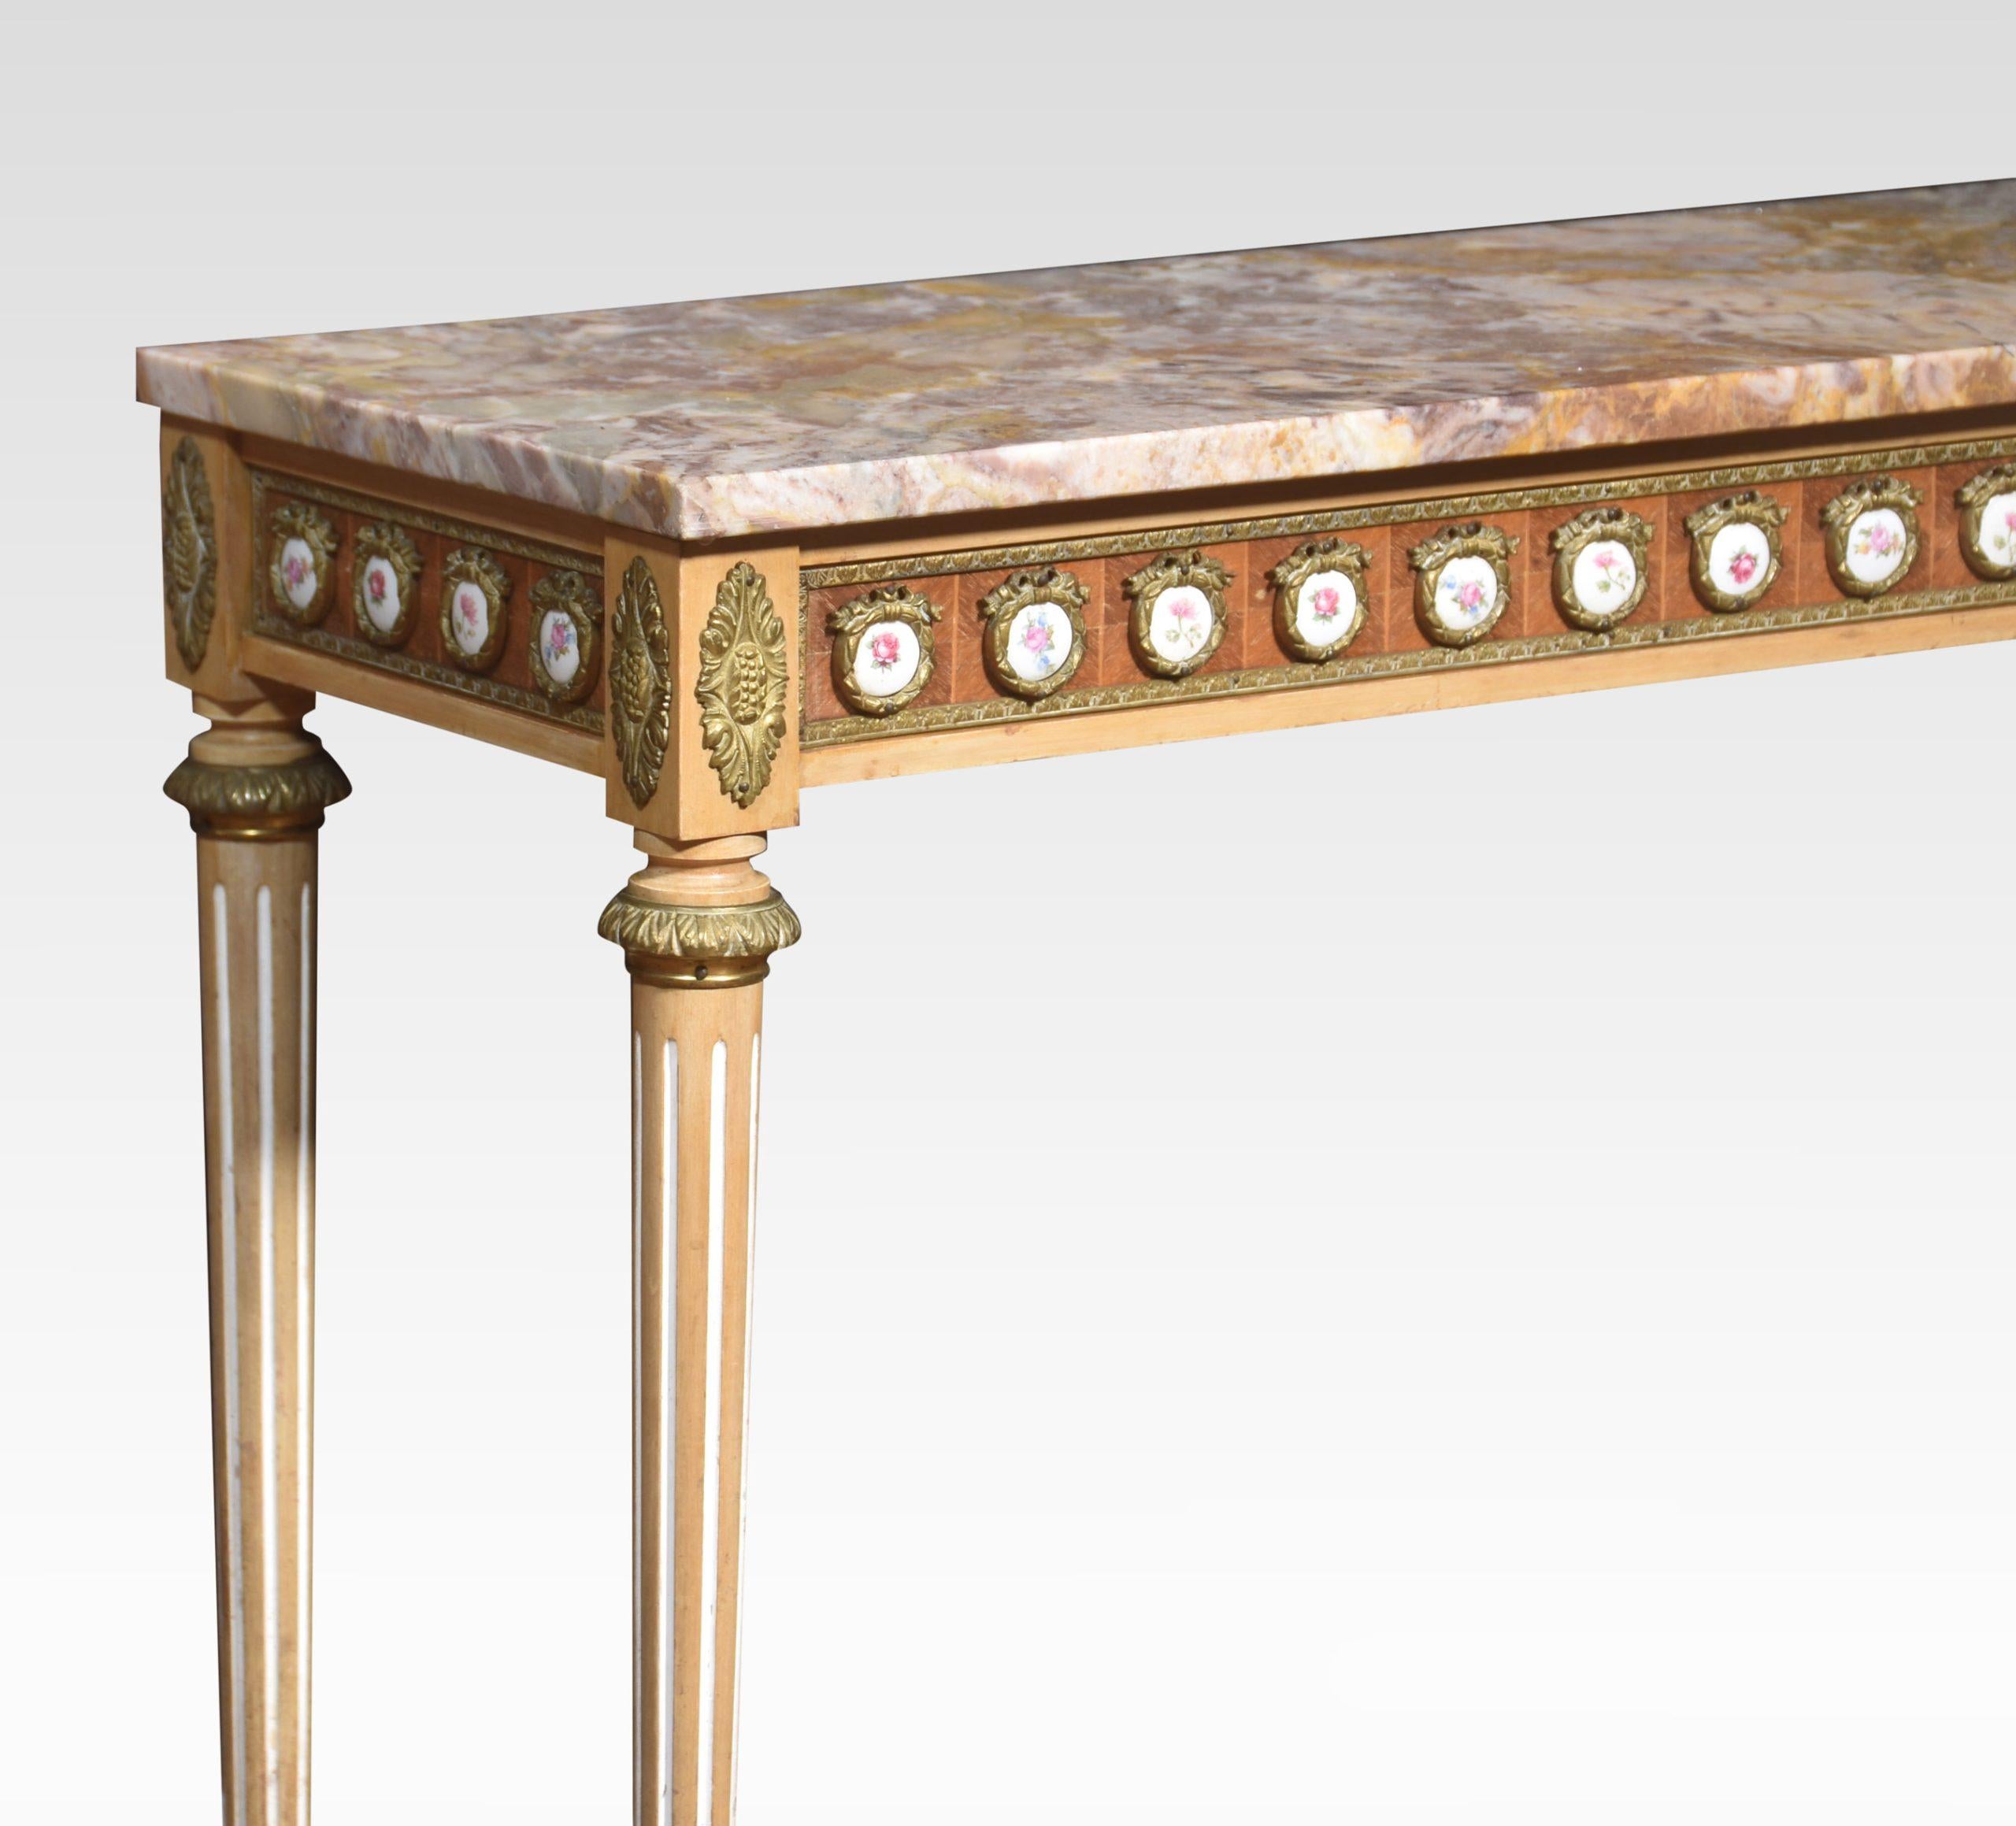 Louis XVI-Revival-Konsolentisch von H & L Epstein, die rechteckige, gut gemaserte Marmorplatte mit vergoldeten Metallbeschlägen und Emaille-Plaketten. Auf geriffelten, sich verjüngenden Stützen aufgerichtet.
Abmessungen
Höhe 31,5 Zoll
Breite 37